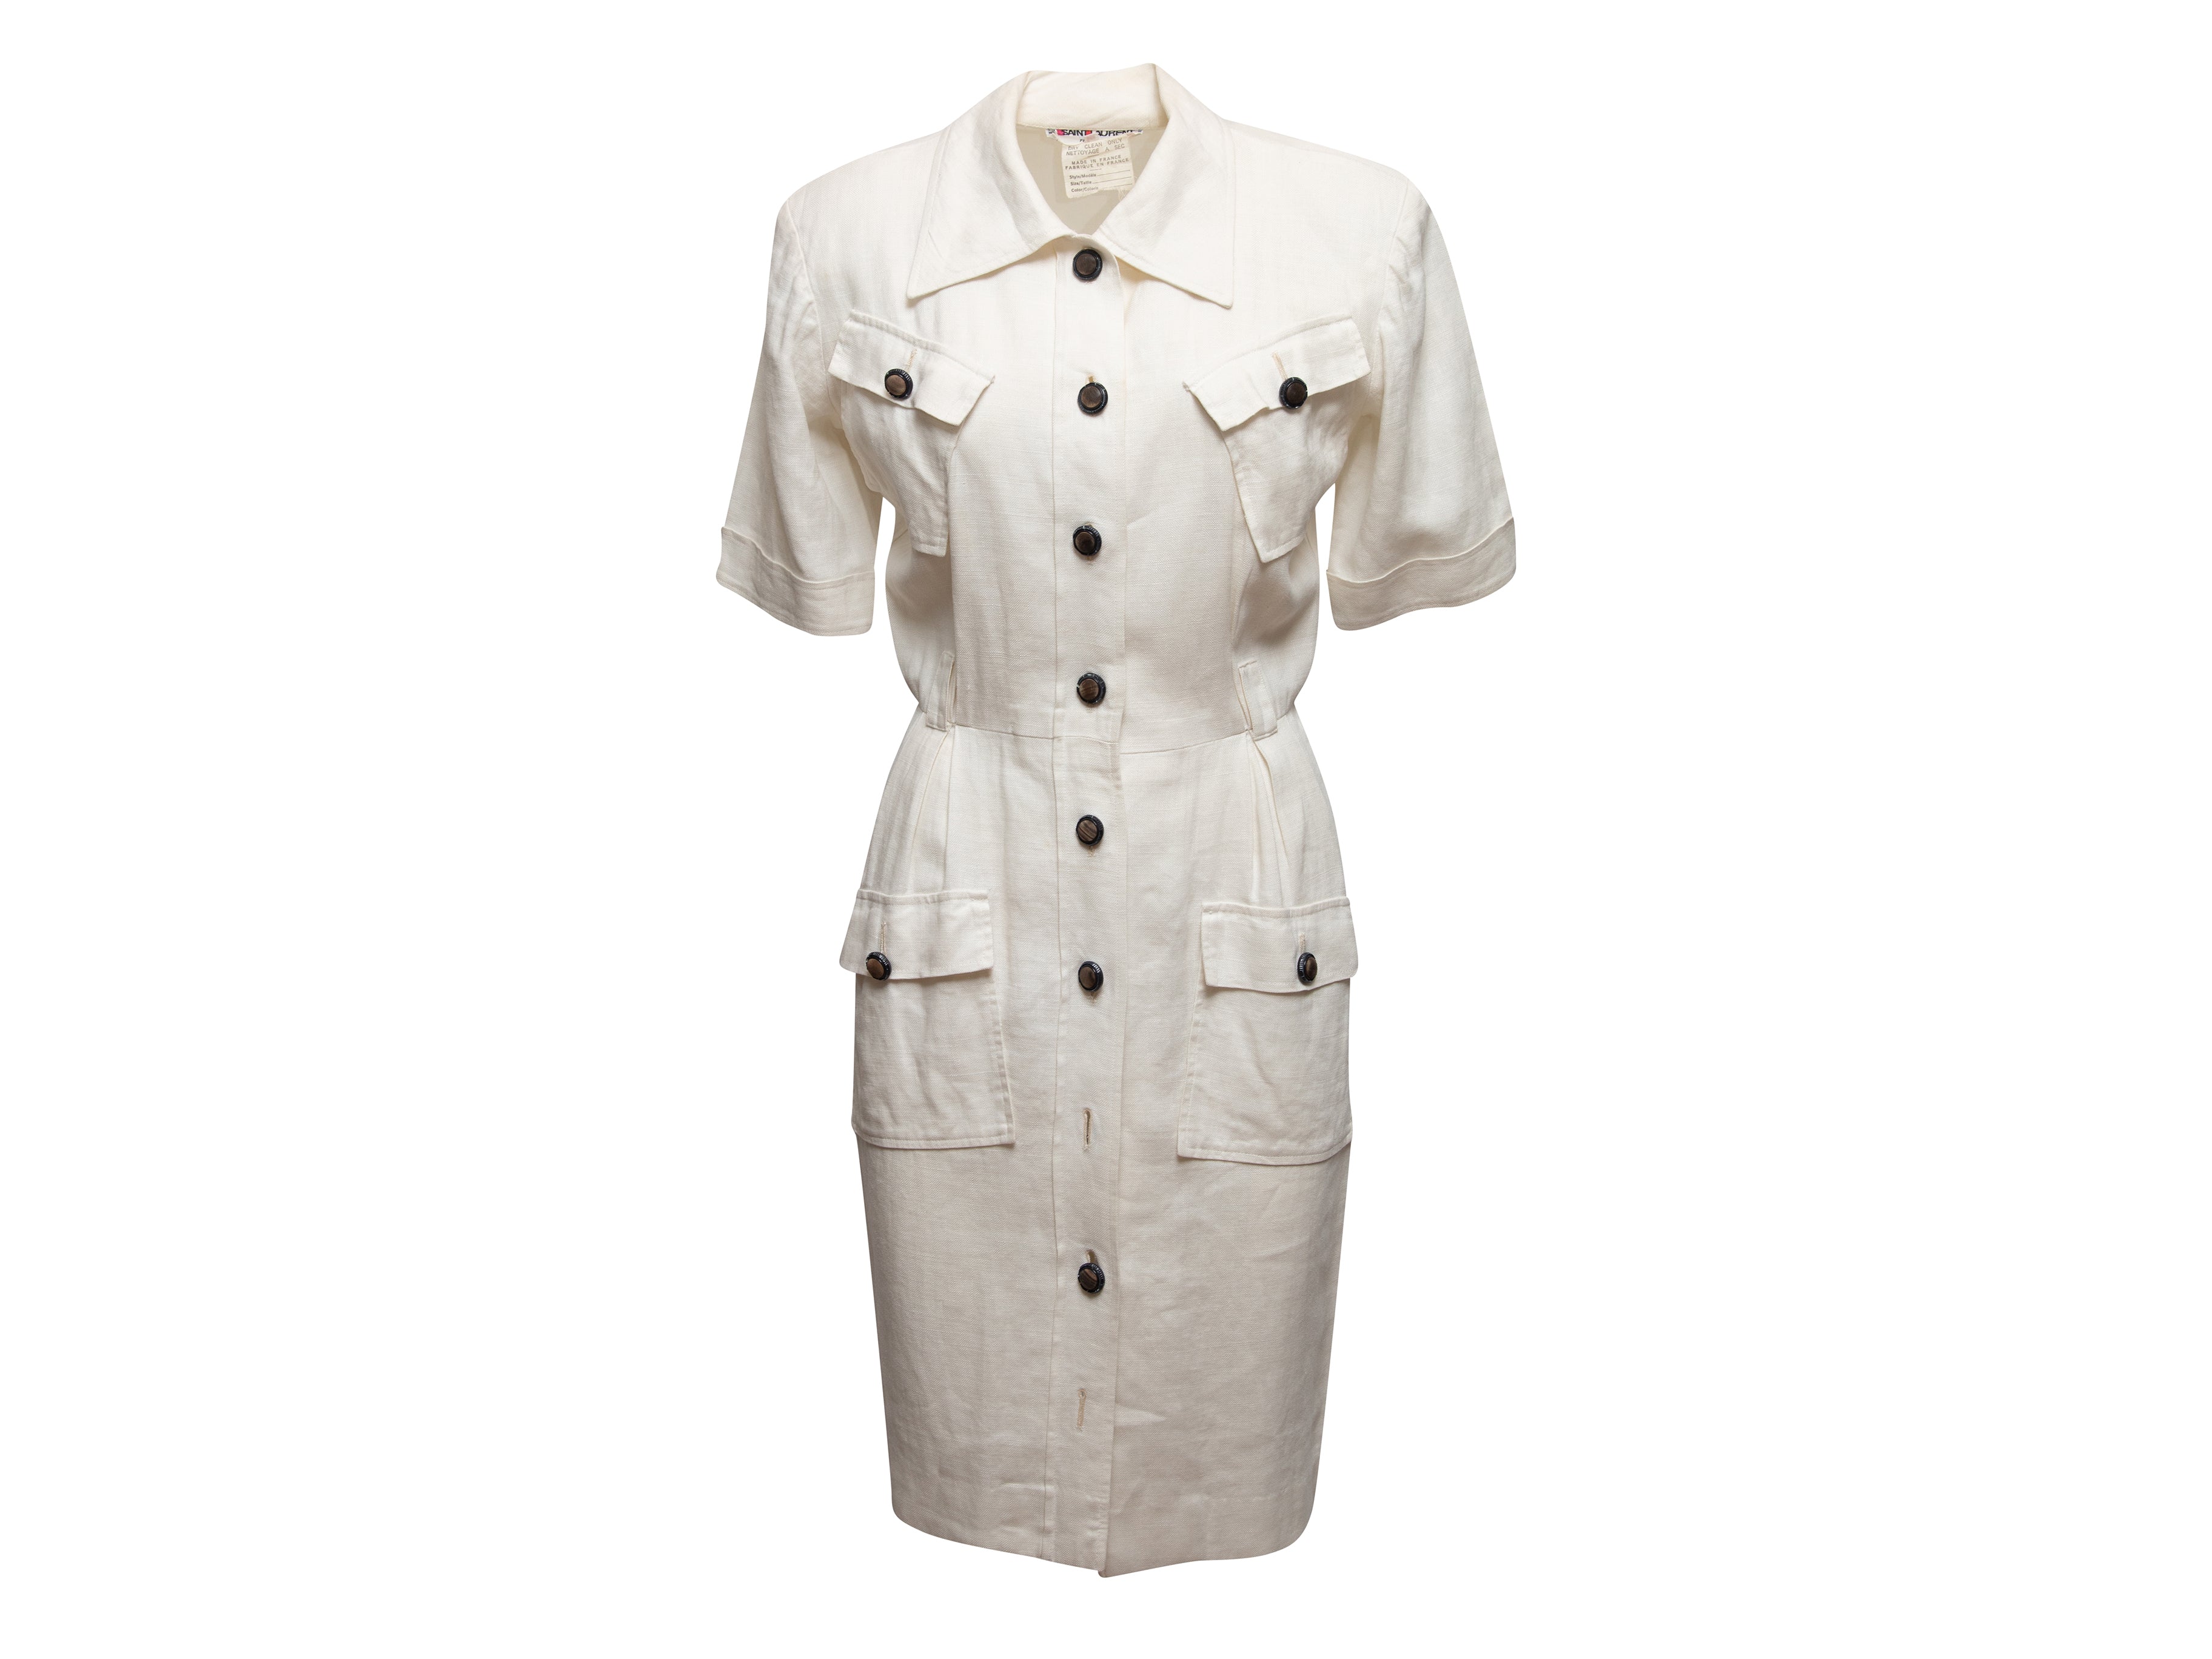 Vintage White Saint Laurent 1970s Linen Dress Size EU 38 – Designer Revival